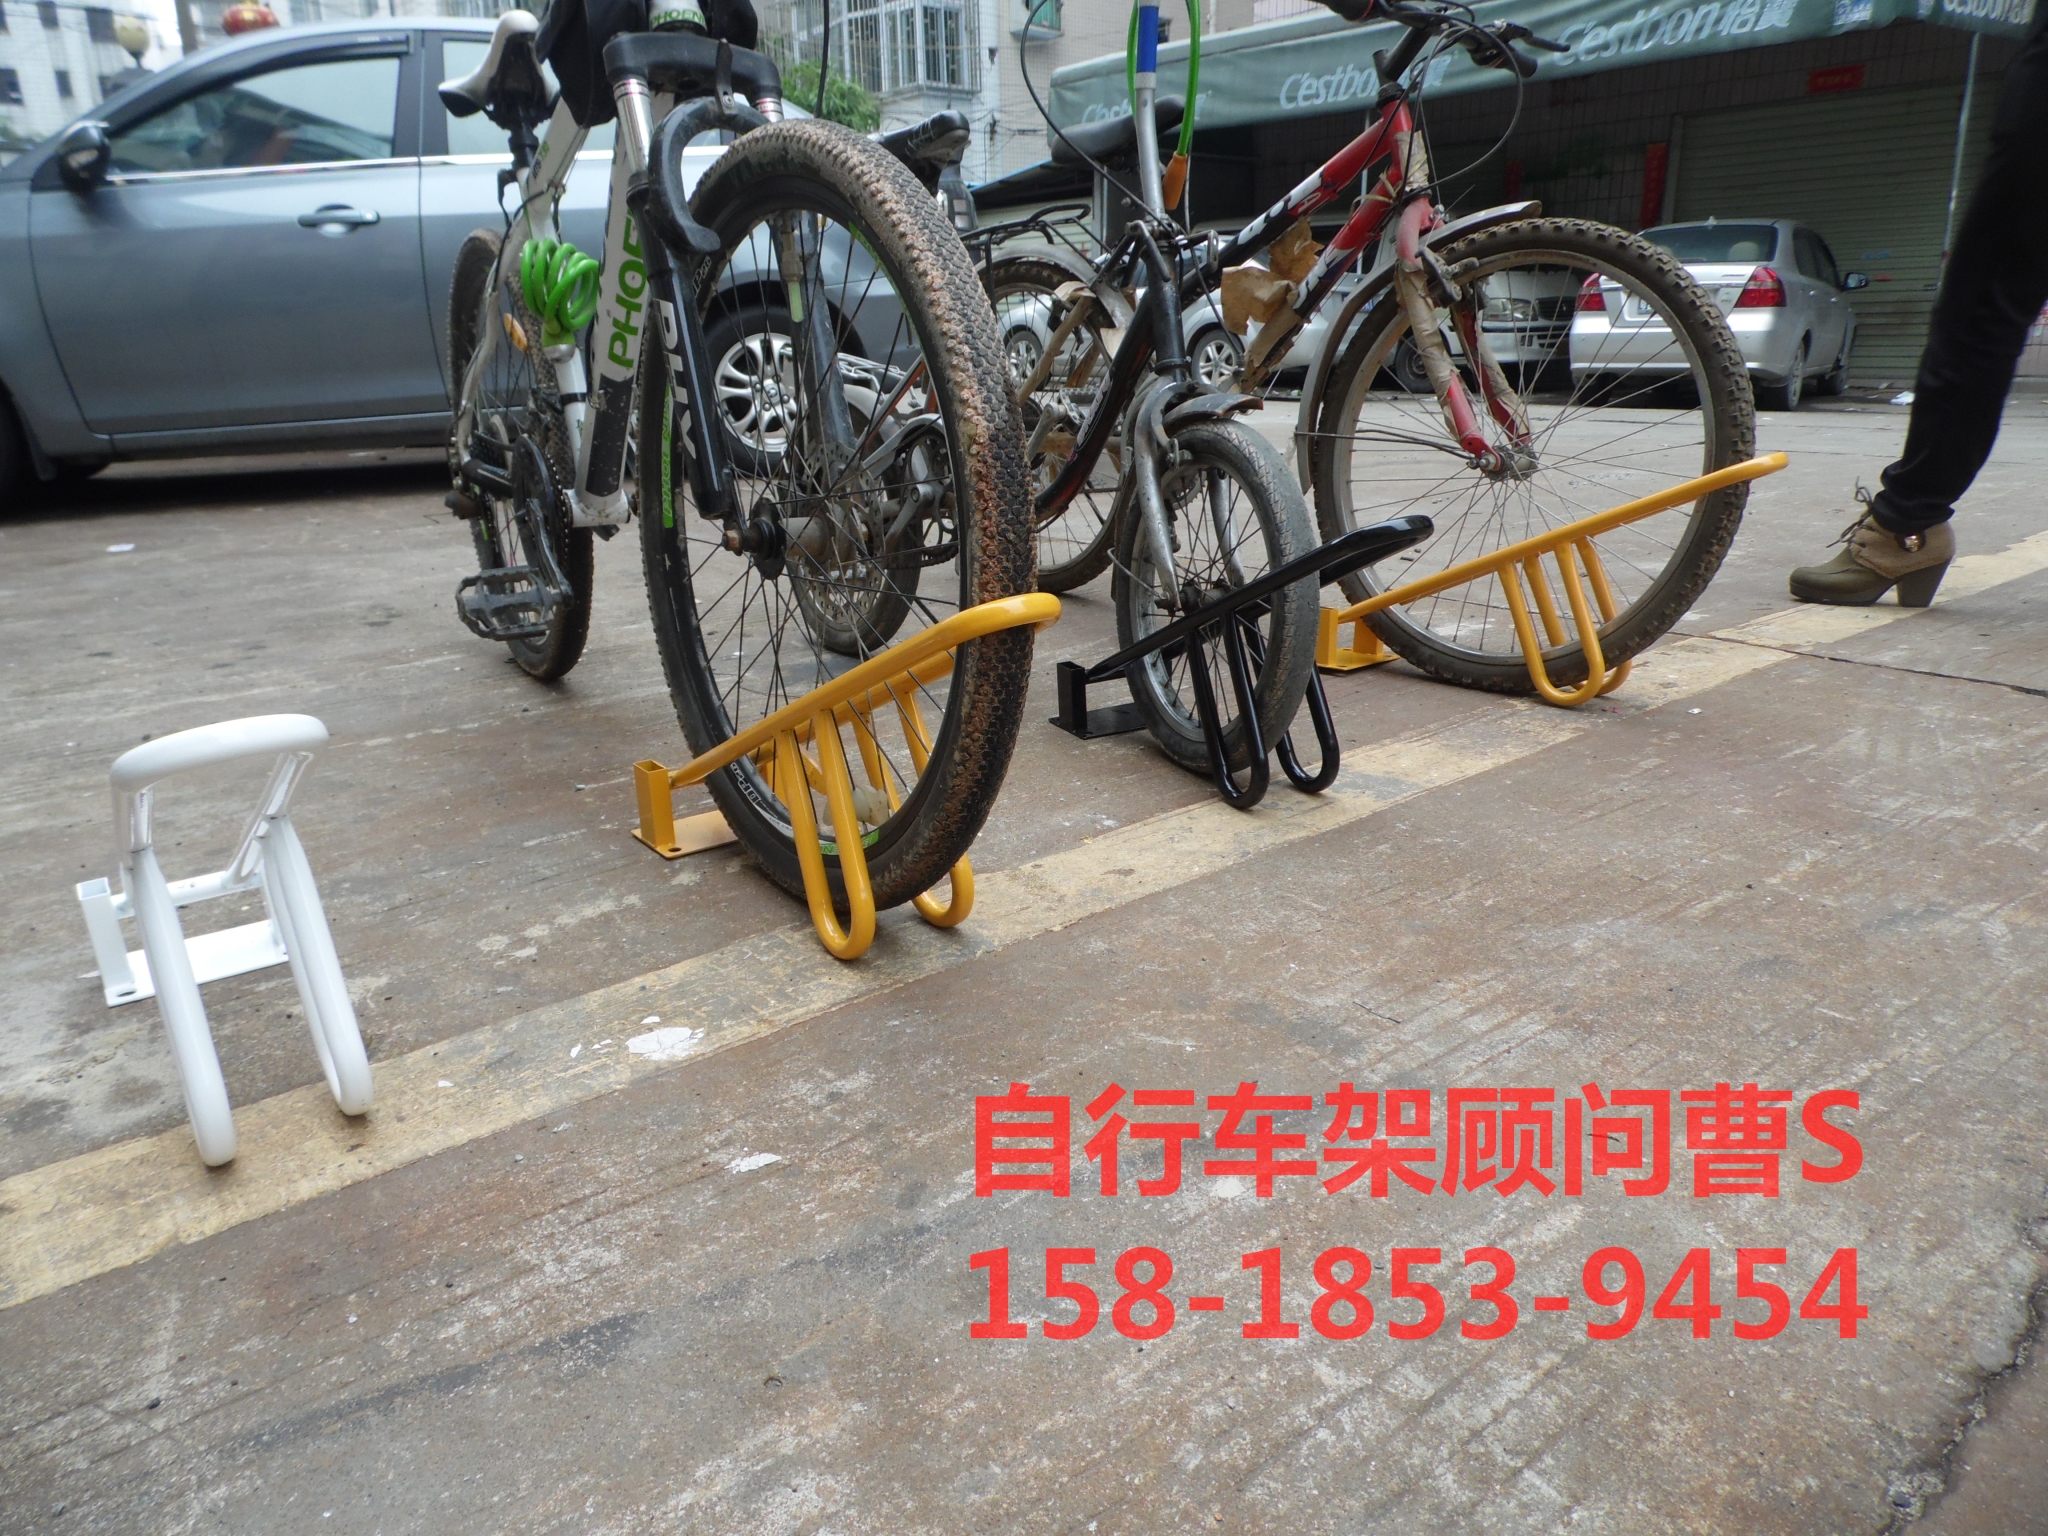 市政工程都用什么类型自行车停放架 广州市政工程用什么类型自行车架 广州市政工程用什么类型自行停车架